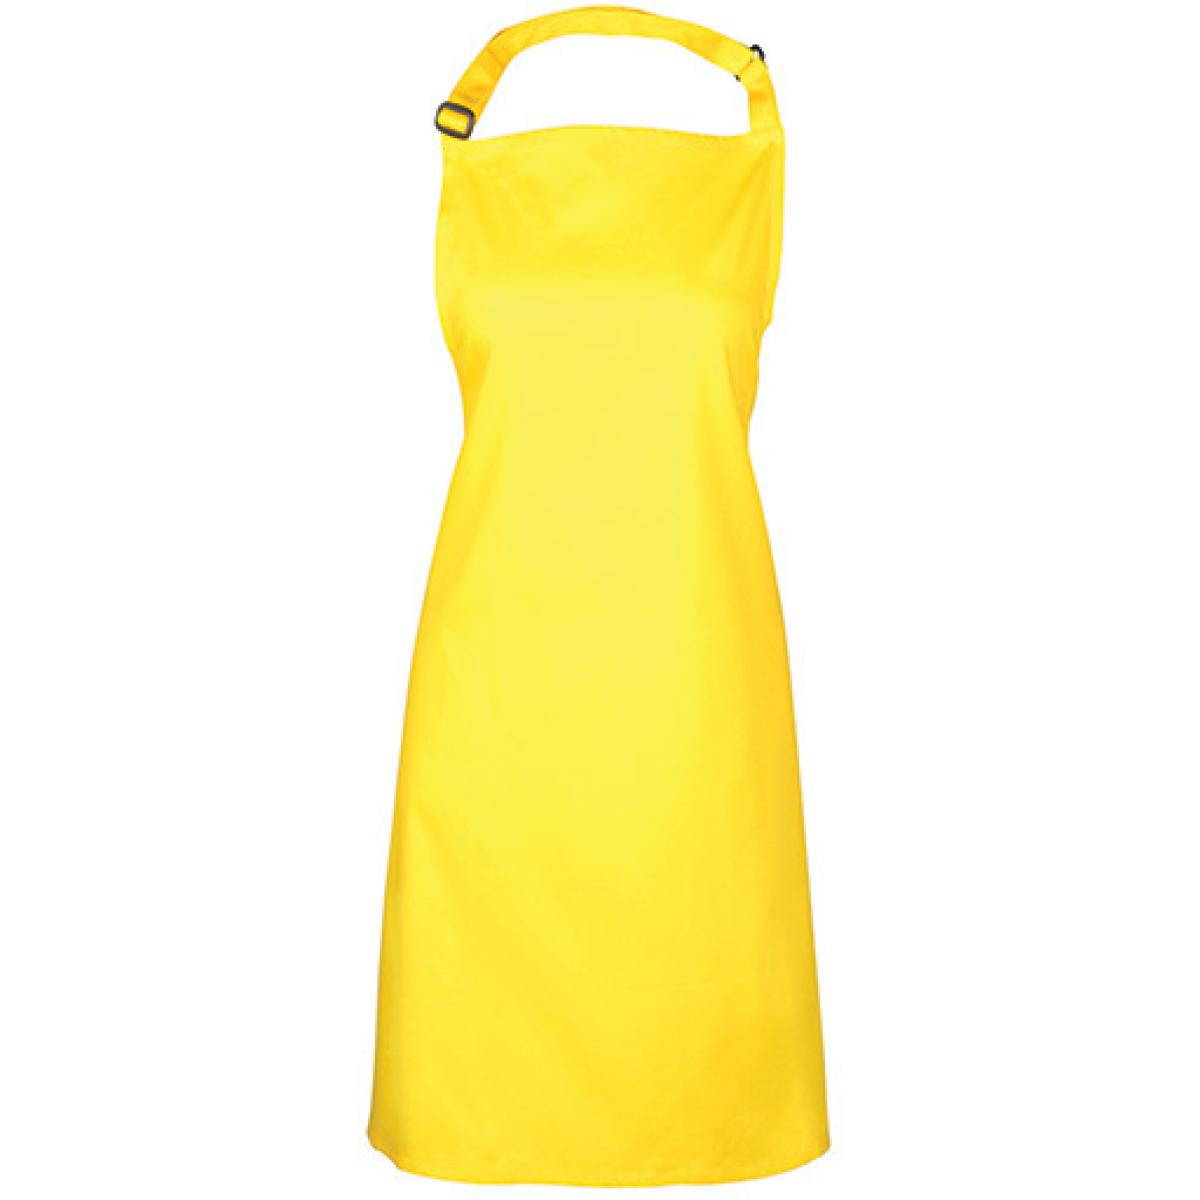 Hersteller: Premier Workwear Herstellernummer: PR150 Artikelbezeichnung: Latzschürze ´Colours´ - Waschbar bei 60 °C Farbe: Yellow (ca. Pantone Yellow c)